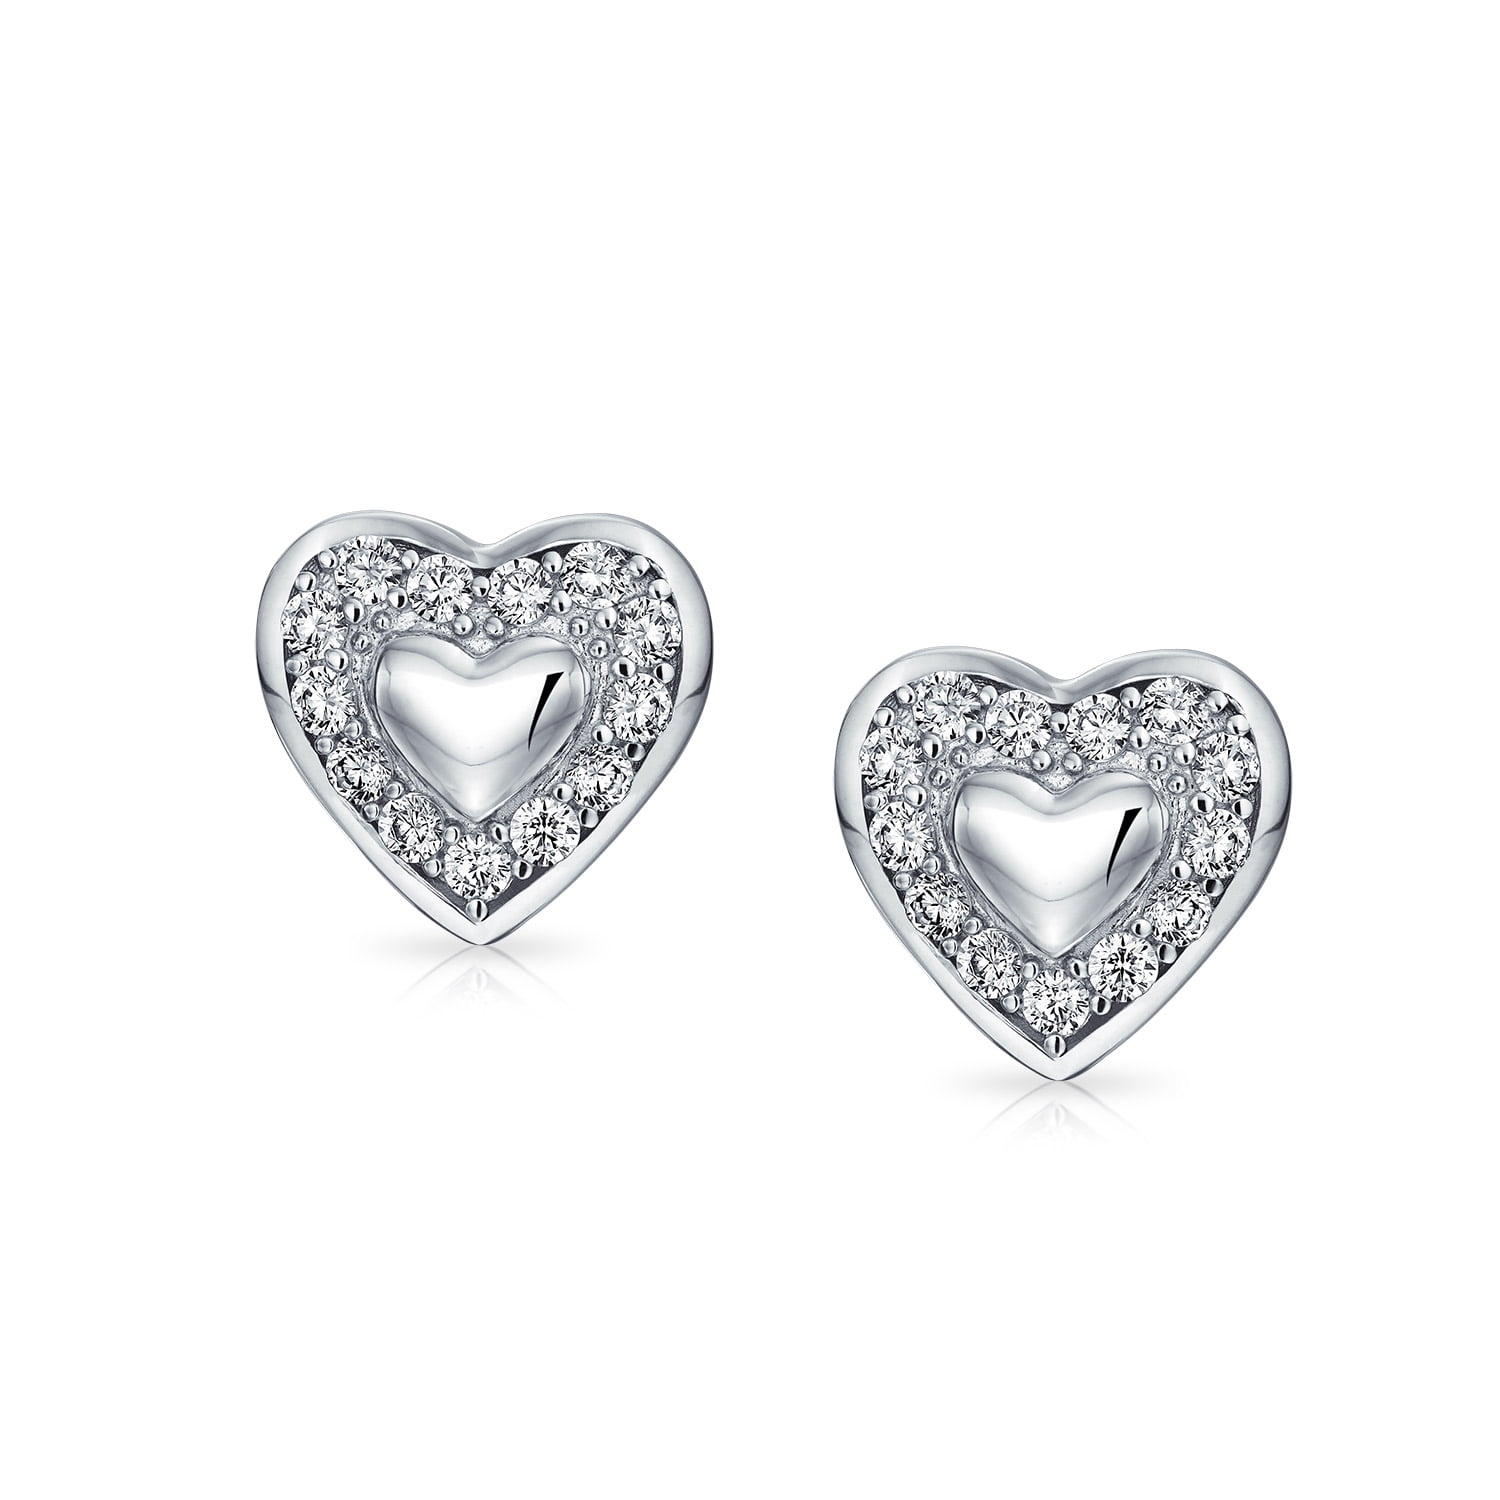 Anazoz Womens Earrings S925 Sterling Silver Round Cut Cubic Zirconia Heart Women Stud Earrings 